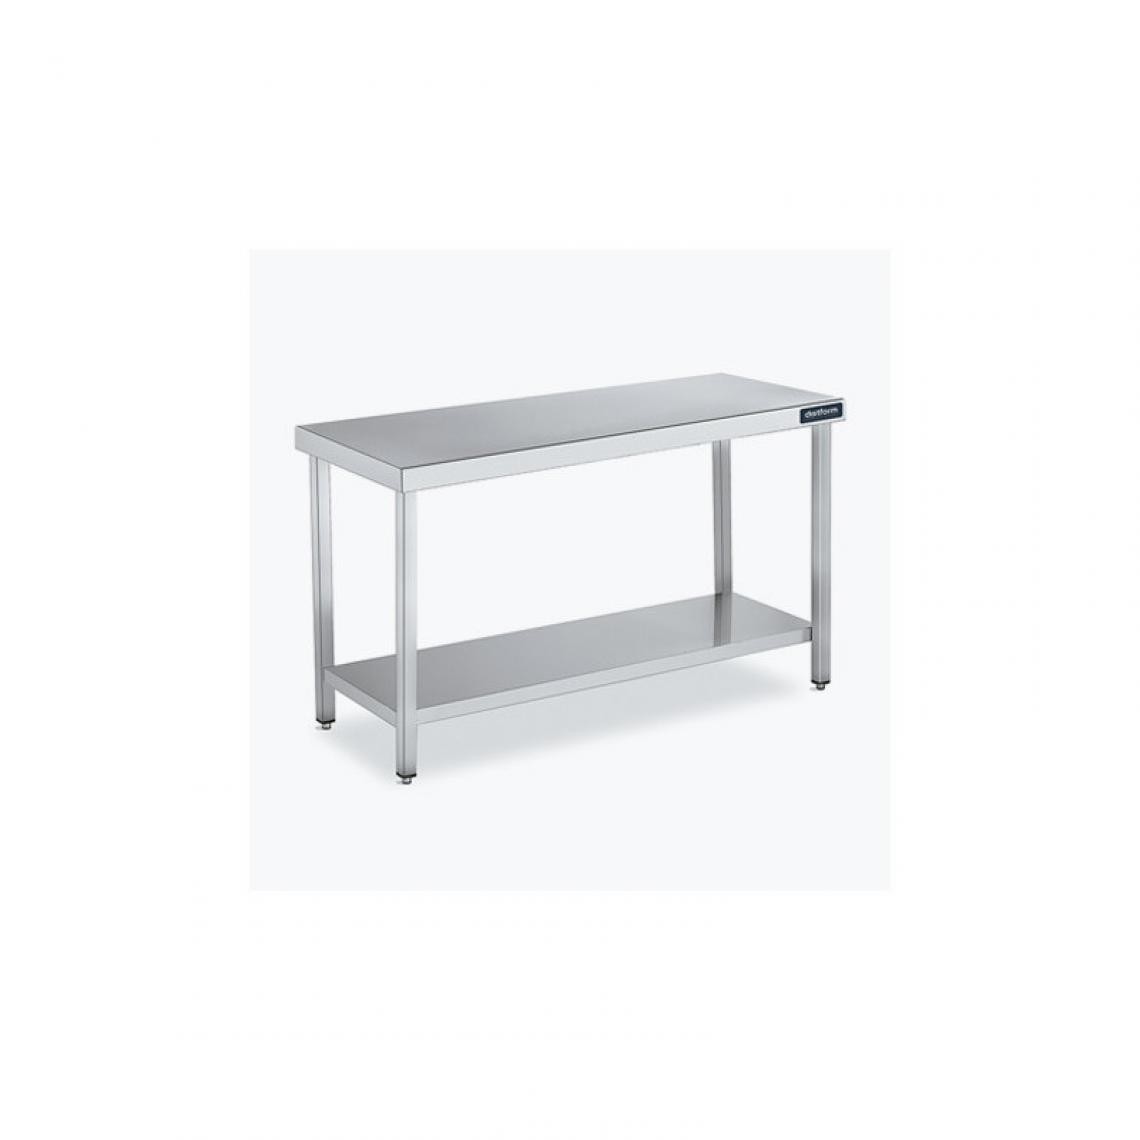 DISTFORM - Table Centrale 600x900 avec Étagère - Distform - Inox 18/102200x900x850mm - Tables à manger